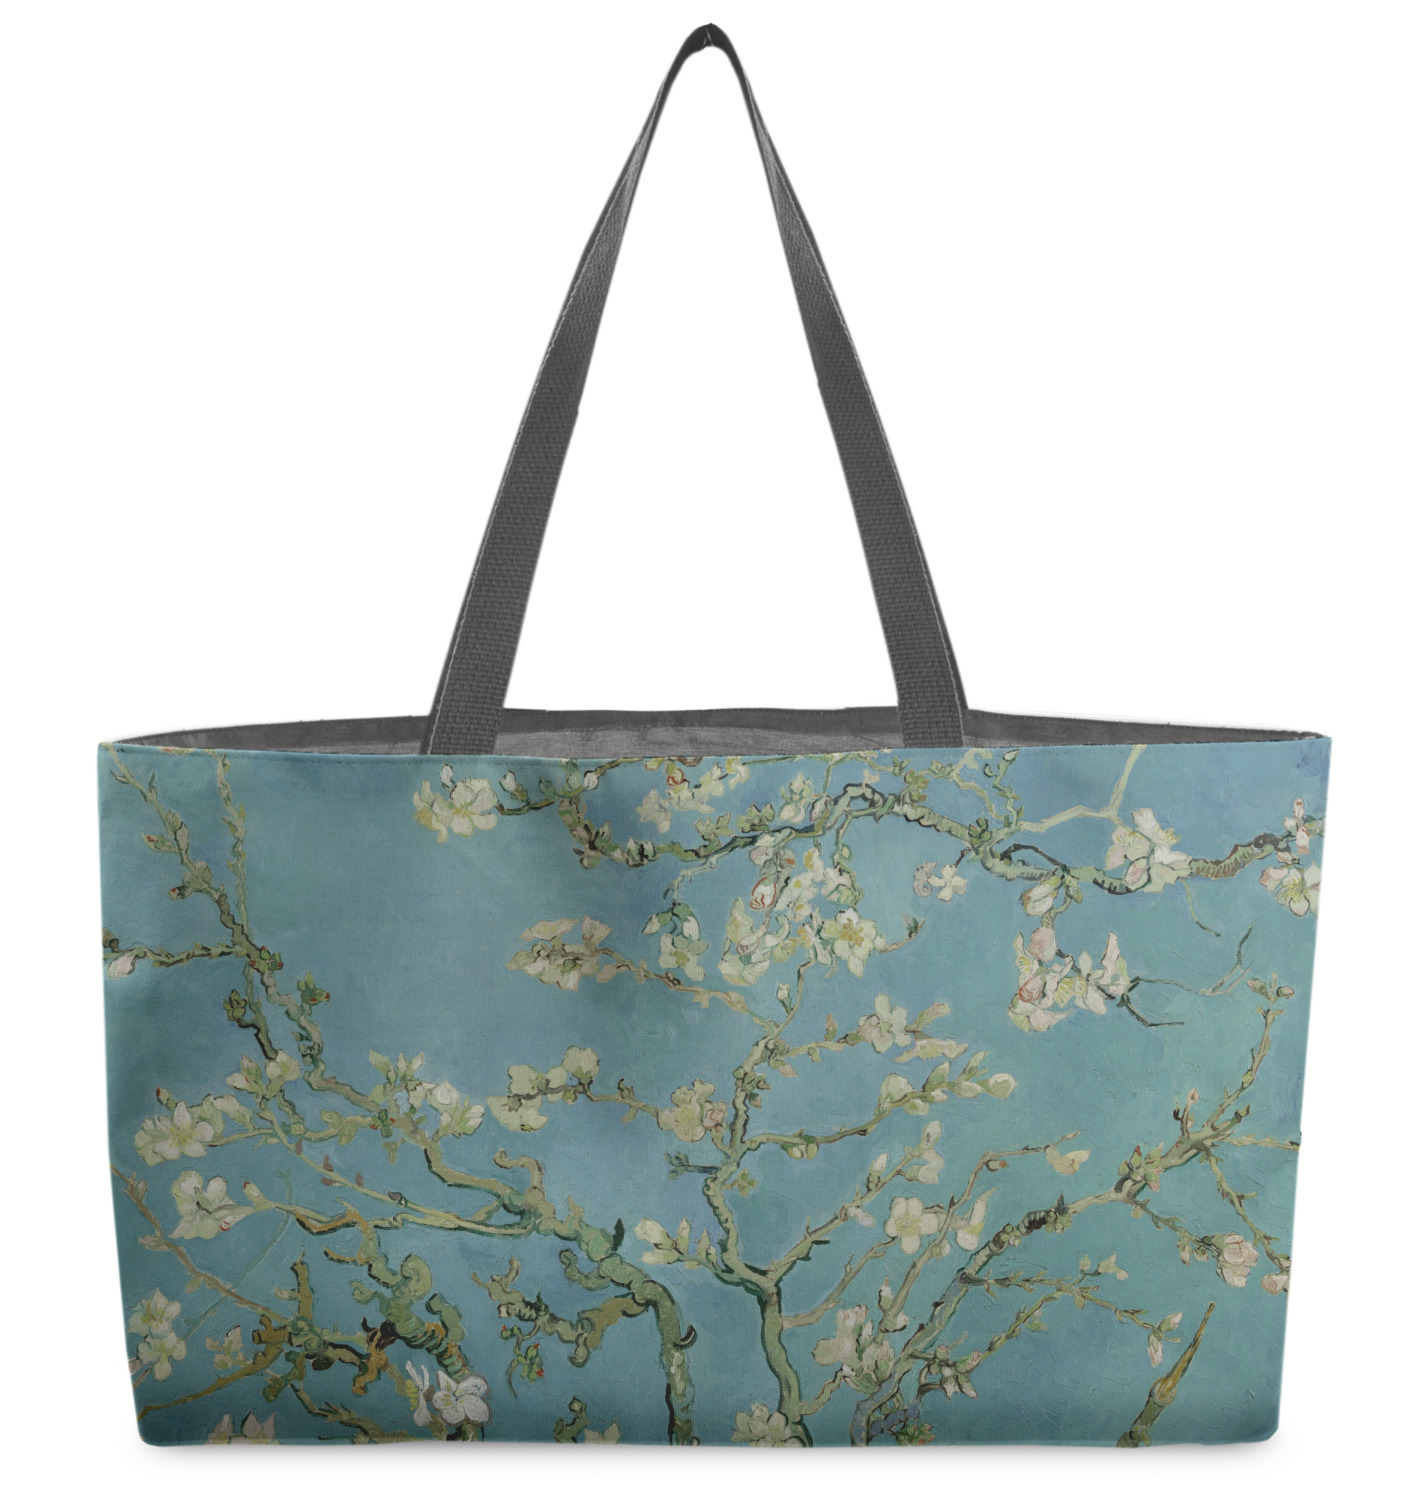 Almond Blossom Tote Bag, Van Gogh Tote Bag, Aesthetic Tote Bag, Tote Bag  Pattern